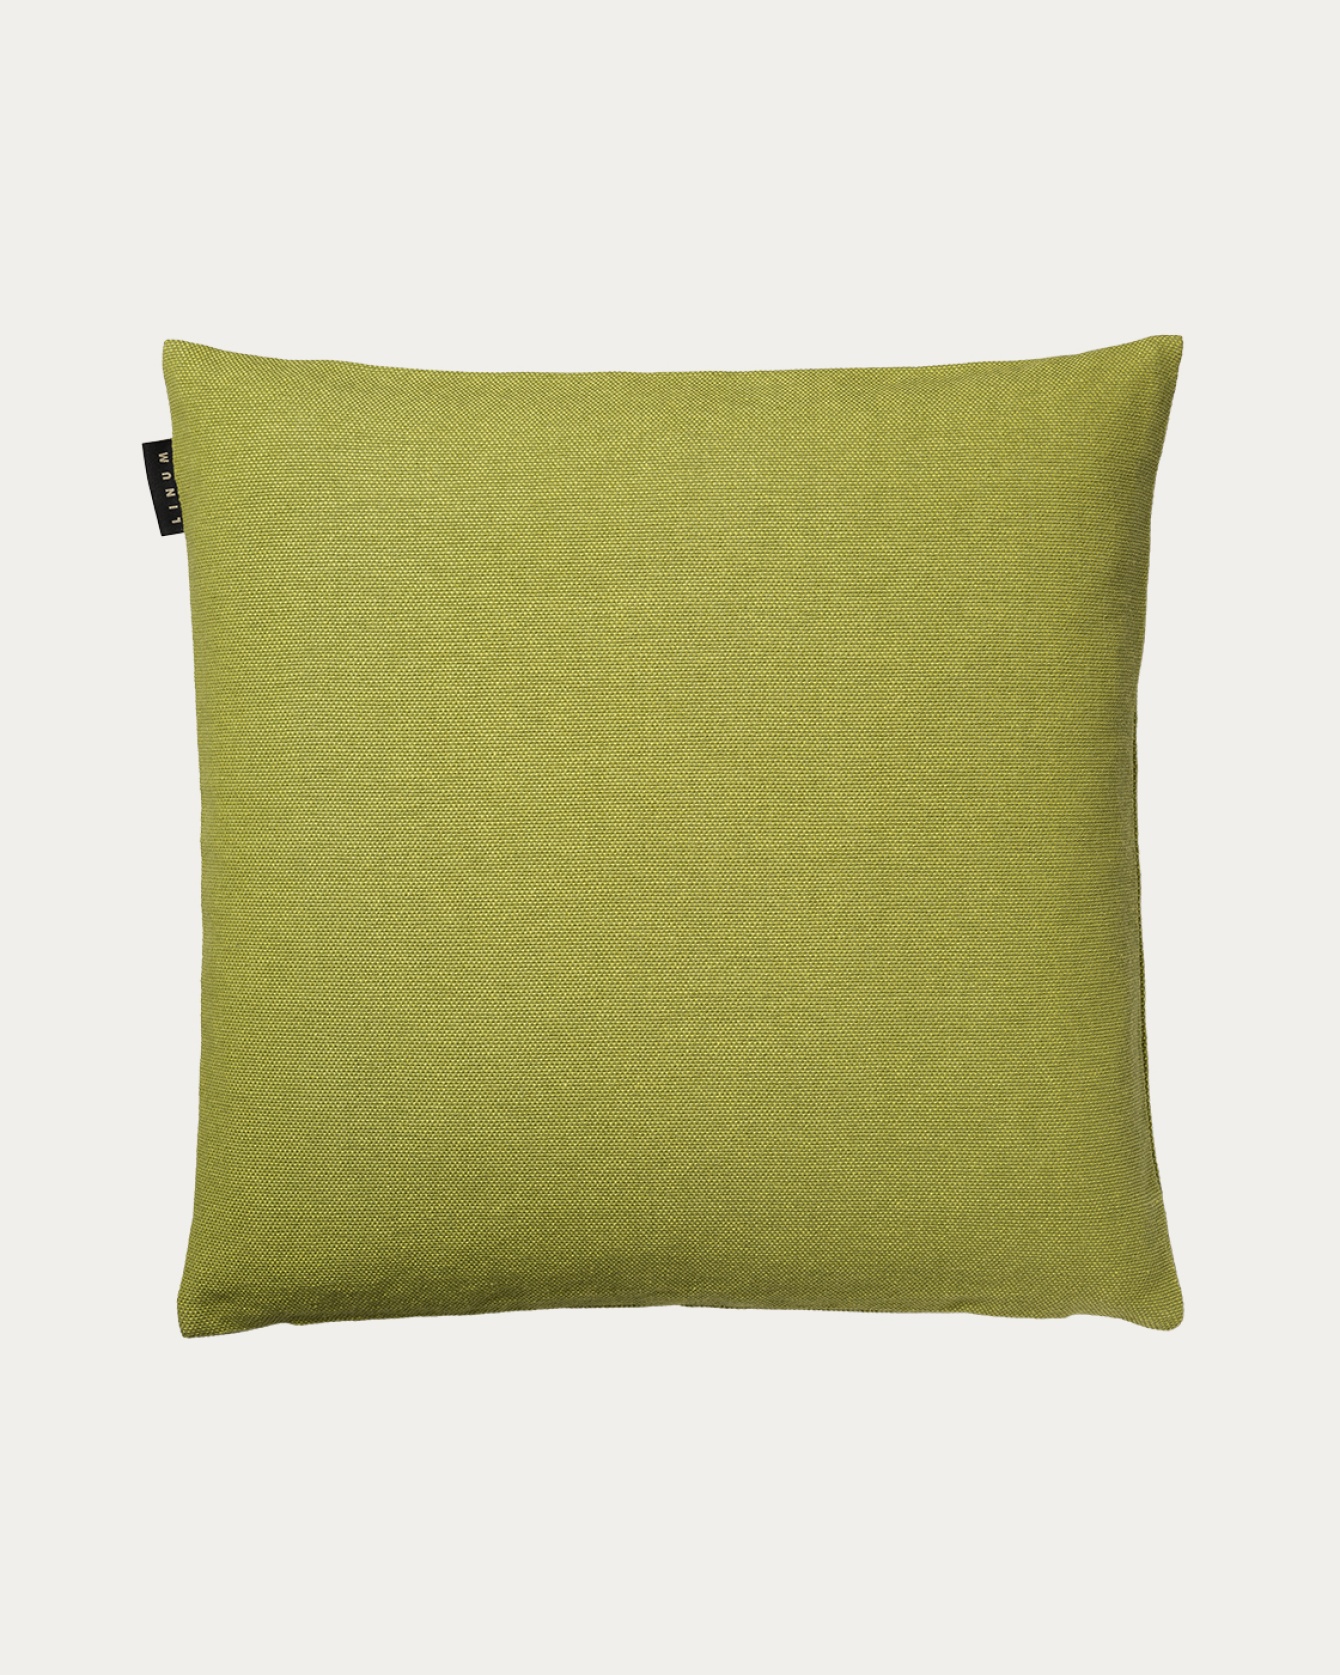 Image du produit housse de coussin PEPPER vert mousse en coton doux de LINUM DESIGN. Facile à laver et durable pendant des générations. Taille 50 x 50 cm.